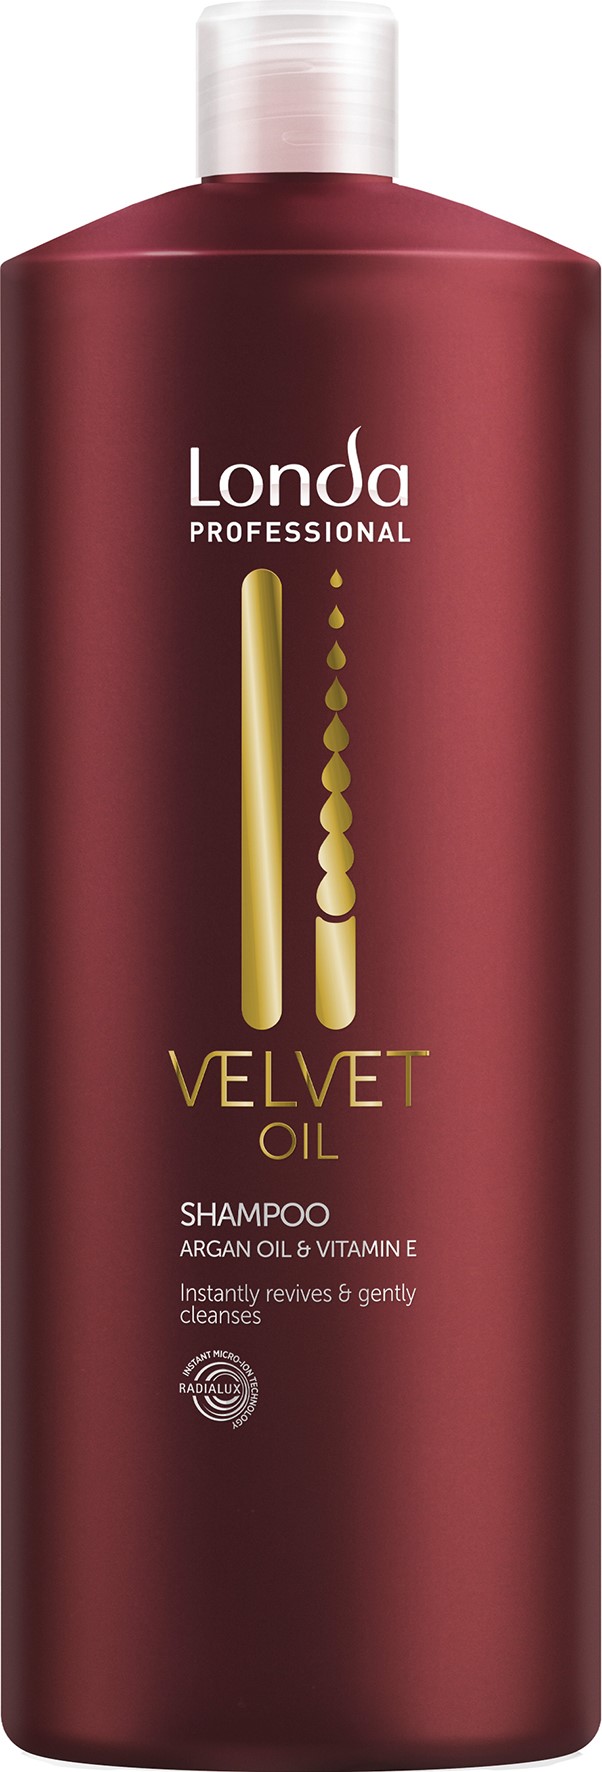 Londa Velvet Oil Shampoo 1000ml